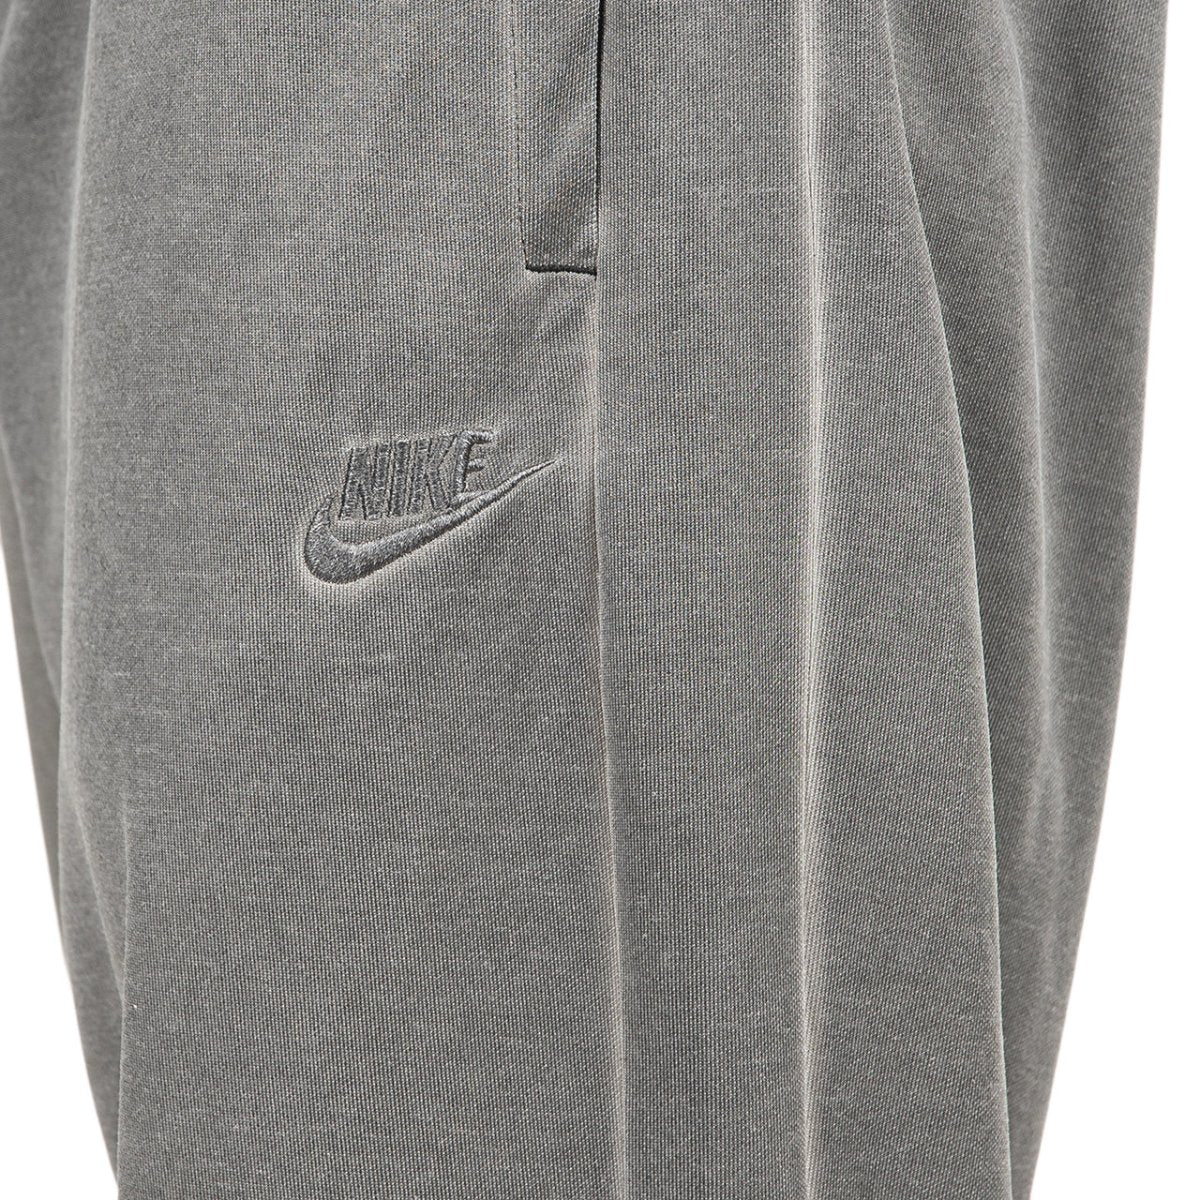 Nike Sportswear Jersey Sweatshorts (Black / Black)